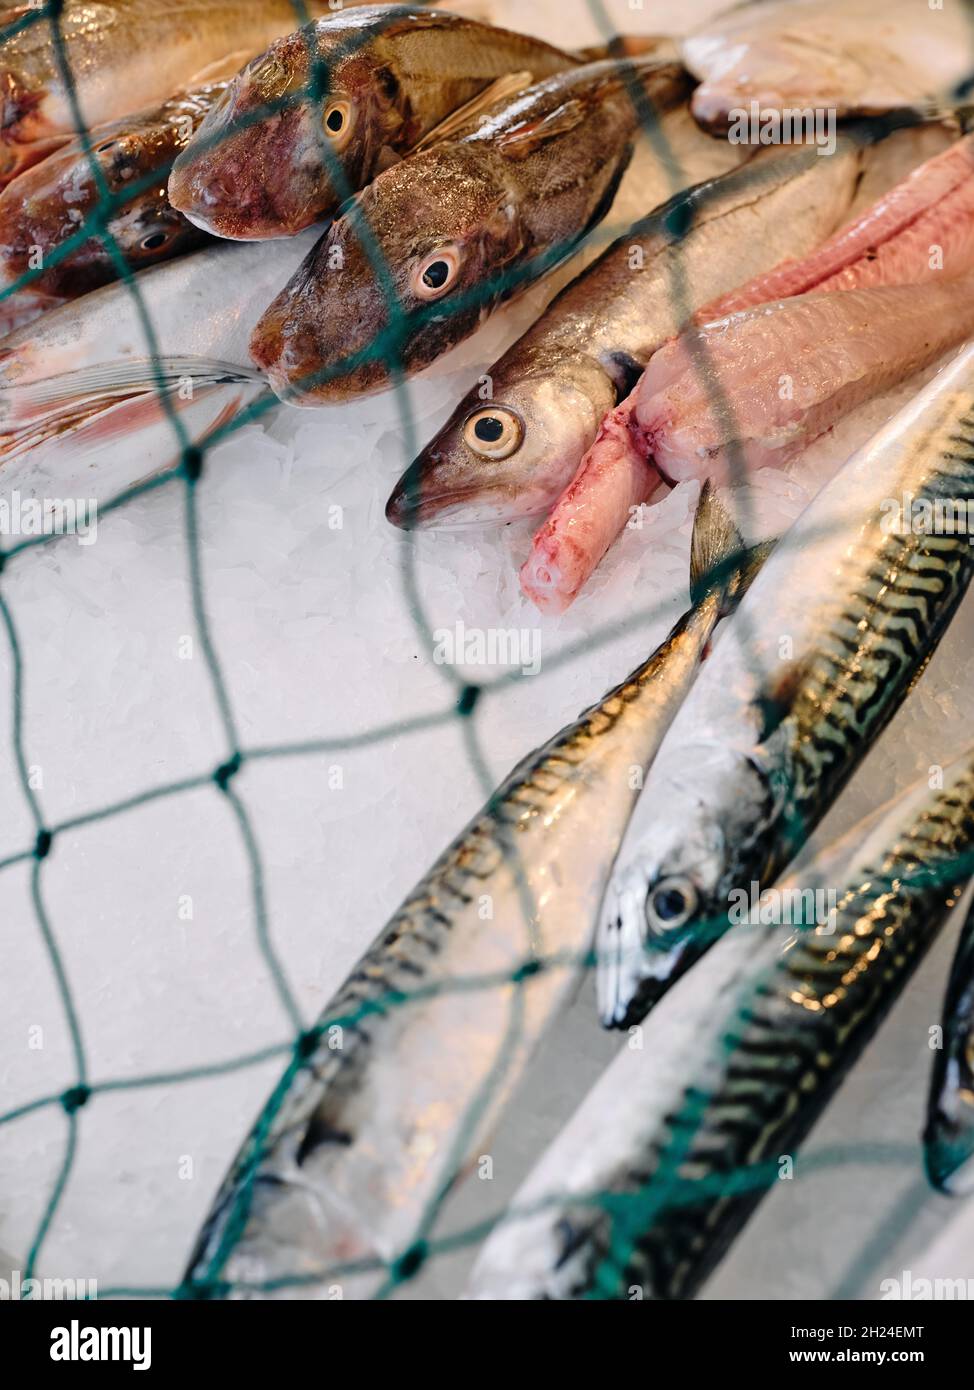 Poisson fraîchement pêché exposé sur le comptoir d'une cabane à poissons frais à Hastings avec un filet de pêche pour les protéger des goélands - vente de poisson frais Banque D'Images